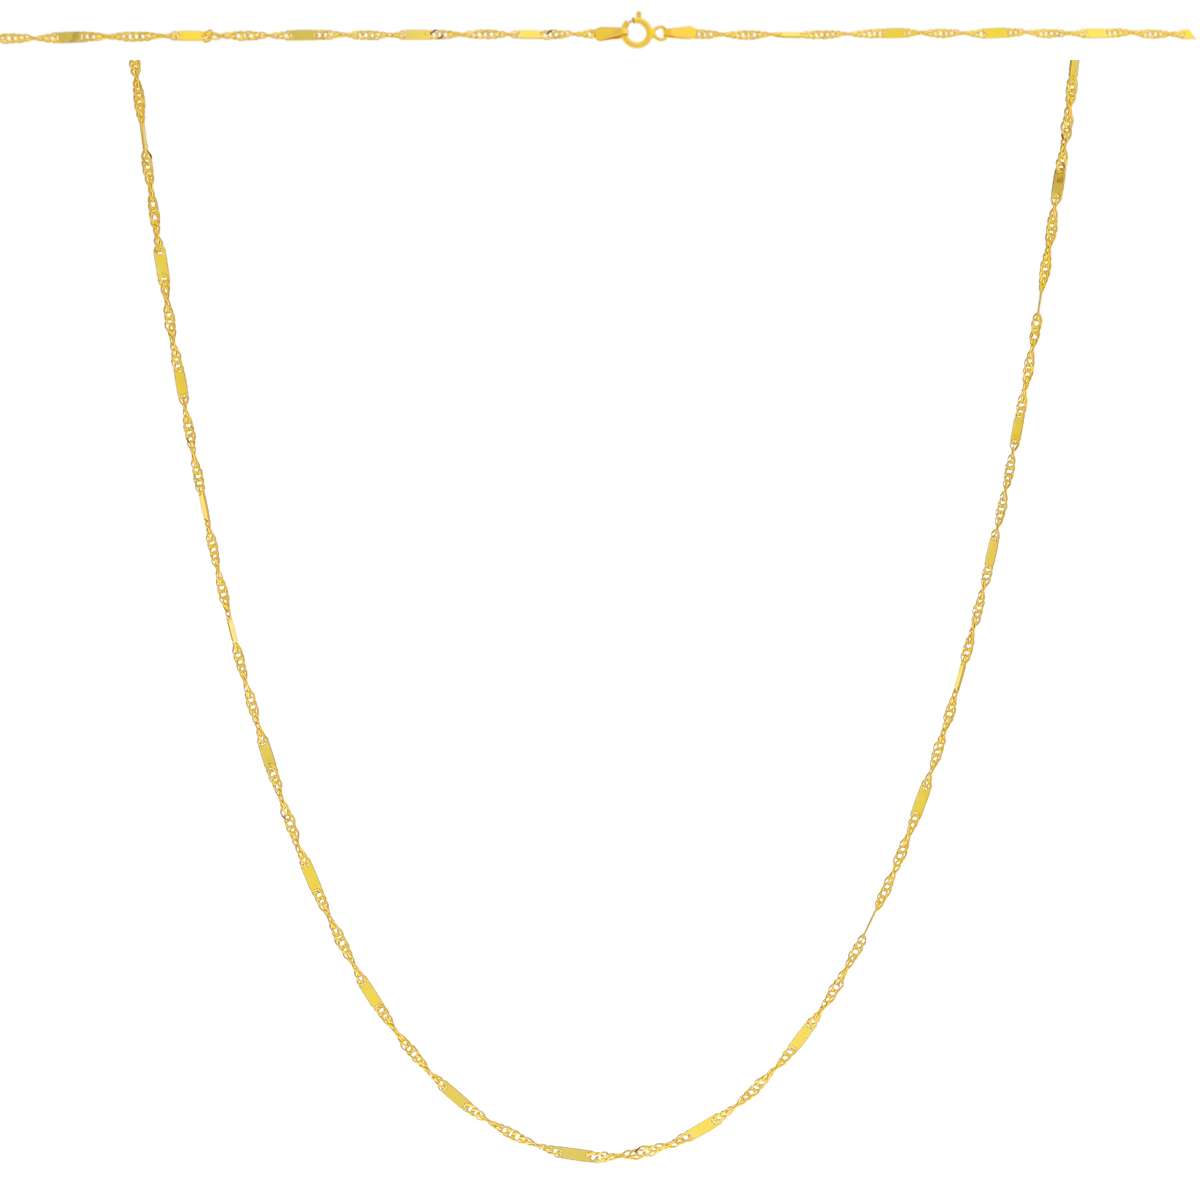 złoty łańcuszek singapur z blaszką PEŁNY 55 cm. Złoto próba 585.